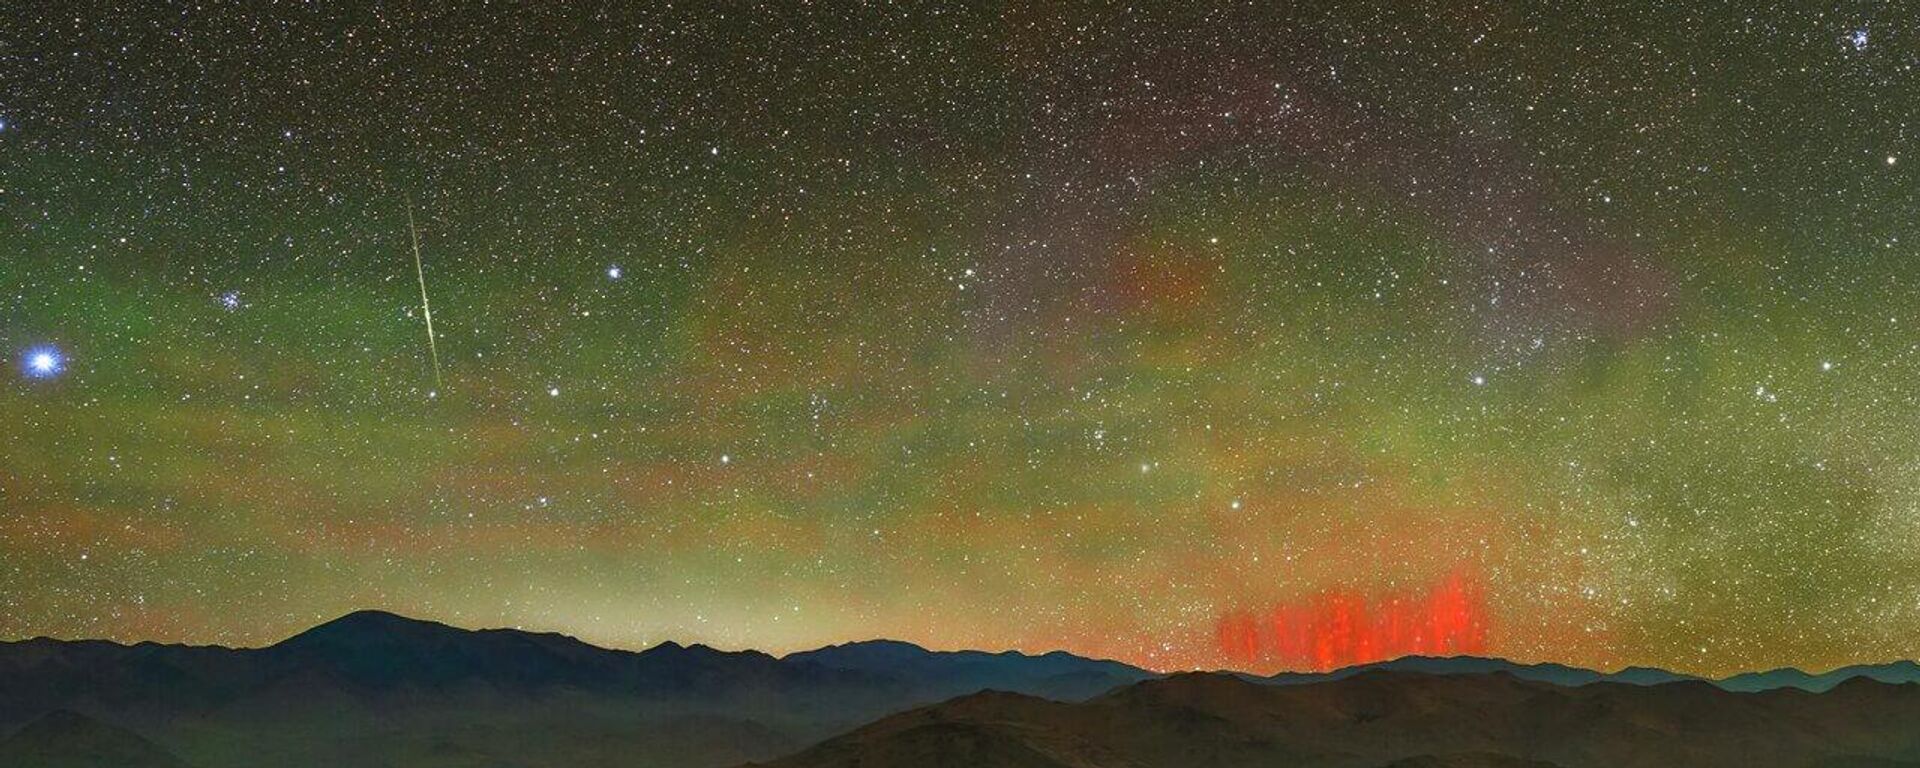 Los llamados duendes rojos en una imagen captada en el Observatorio de La Silla, de Chile - Sputnik Mundo, 1920, 25.08.2022